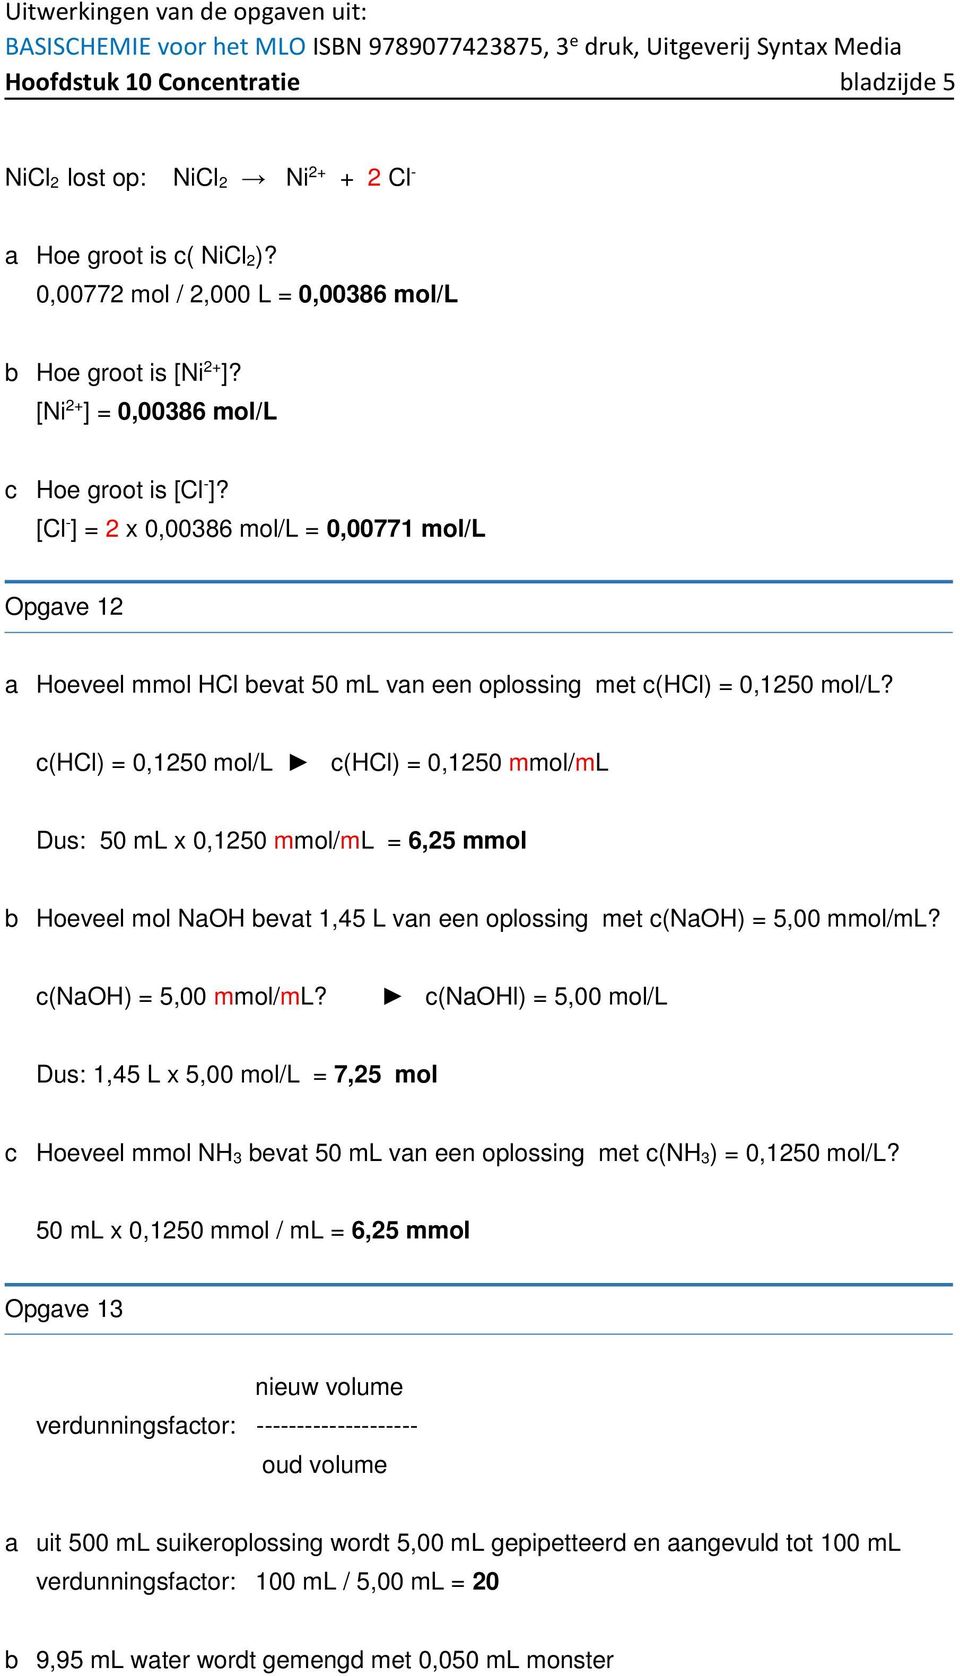 c(hcl) = 0,1250 mol/l c(hcl) = 0,1250 mmol/ml Dus: 50 ml x 0,1250 mmol/ml = 6,25 mmol b Hoeveel mol NaOH bevat 1,45 L van een oplossing met c(naoh) = 5,00 mmol/ml?